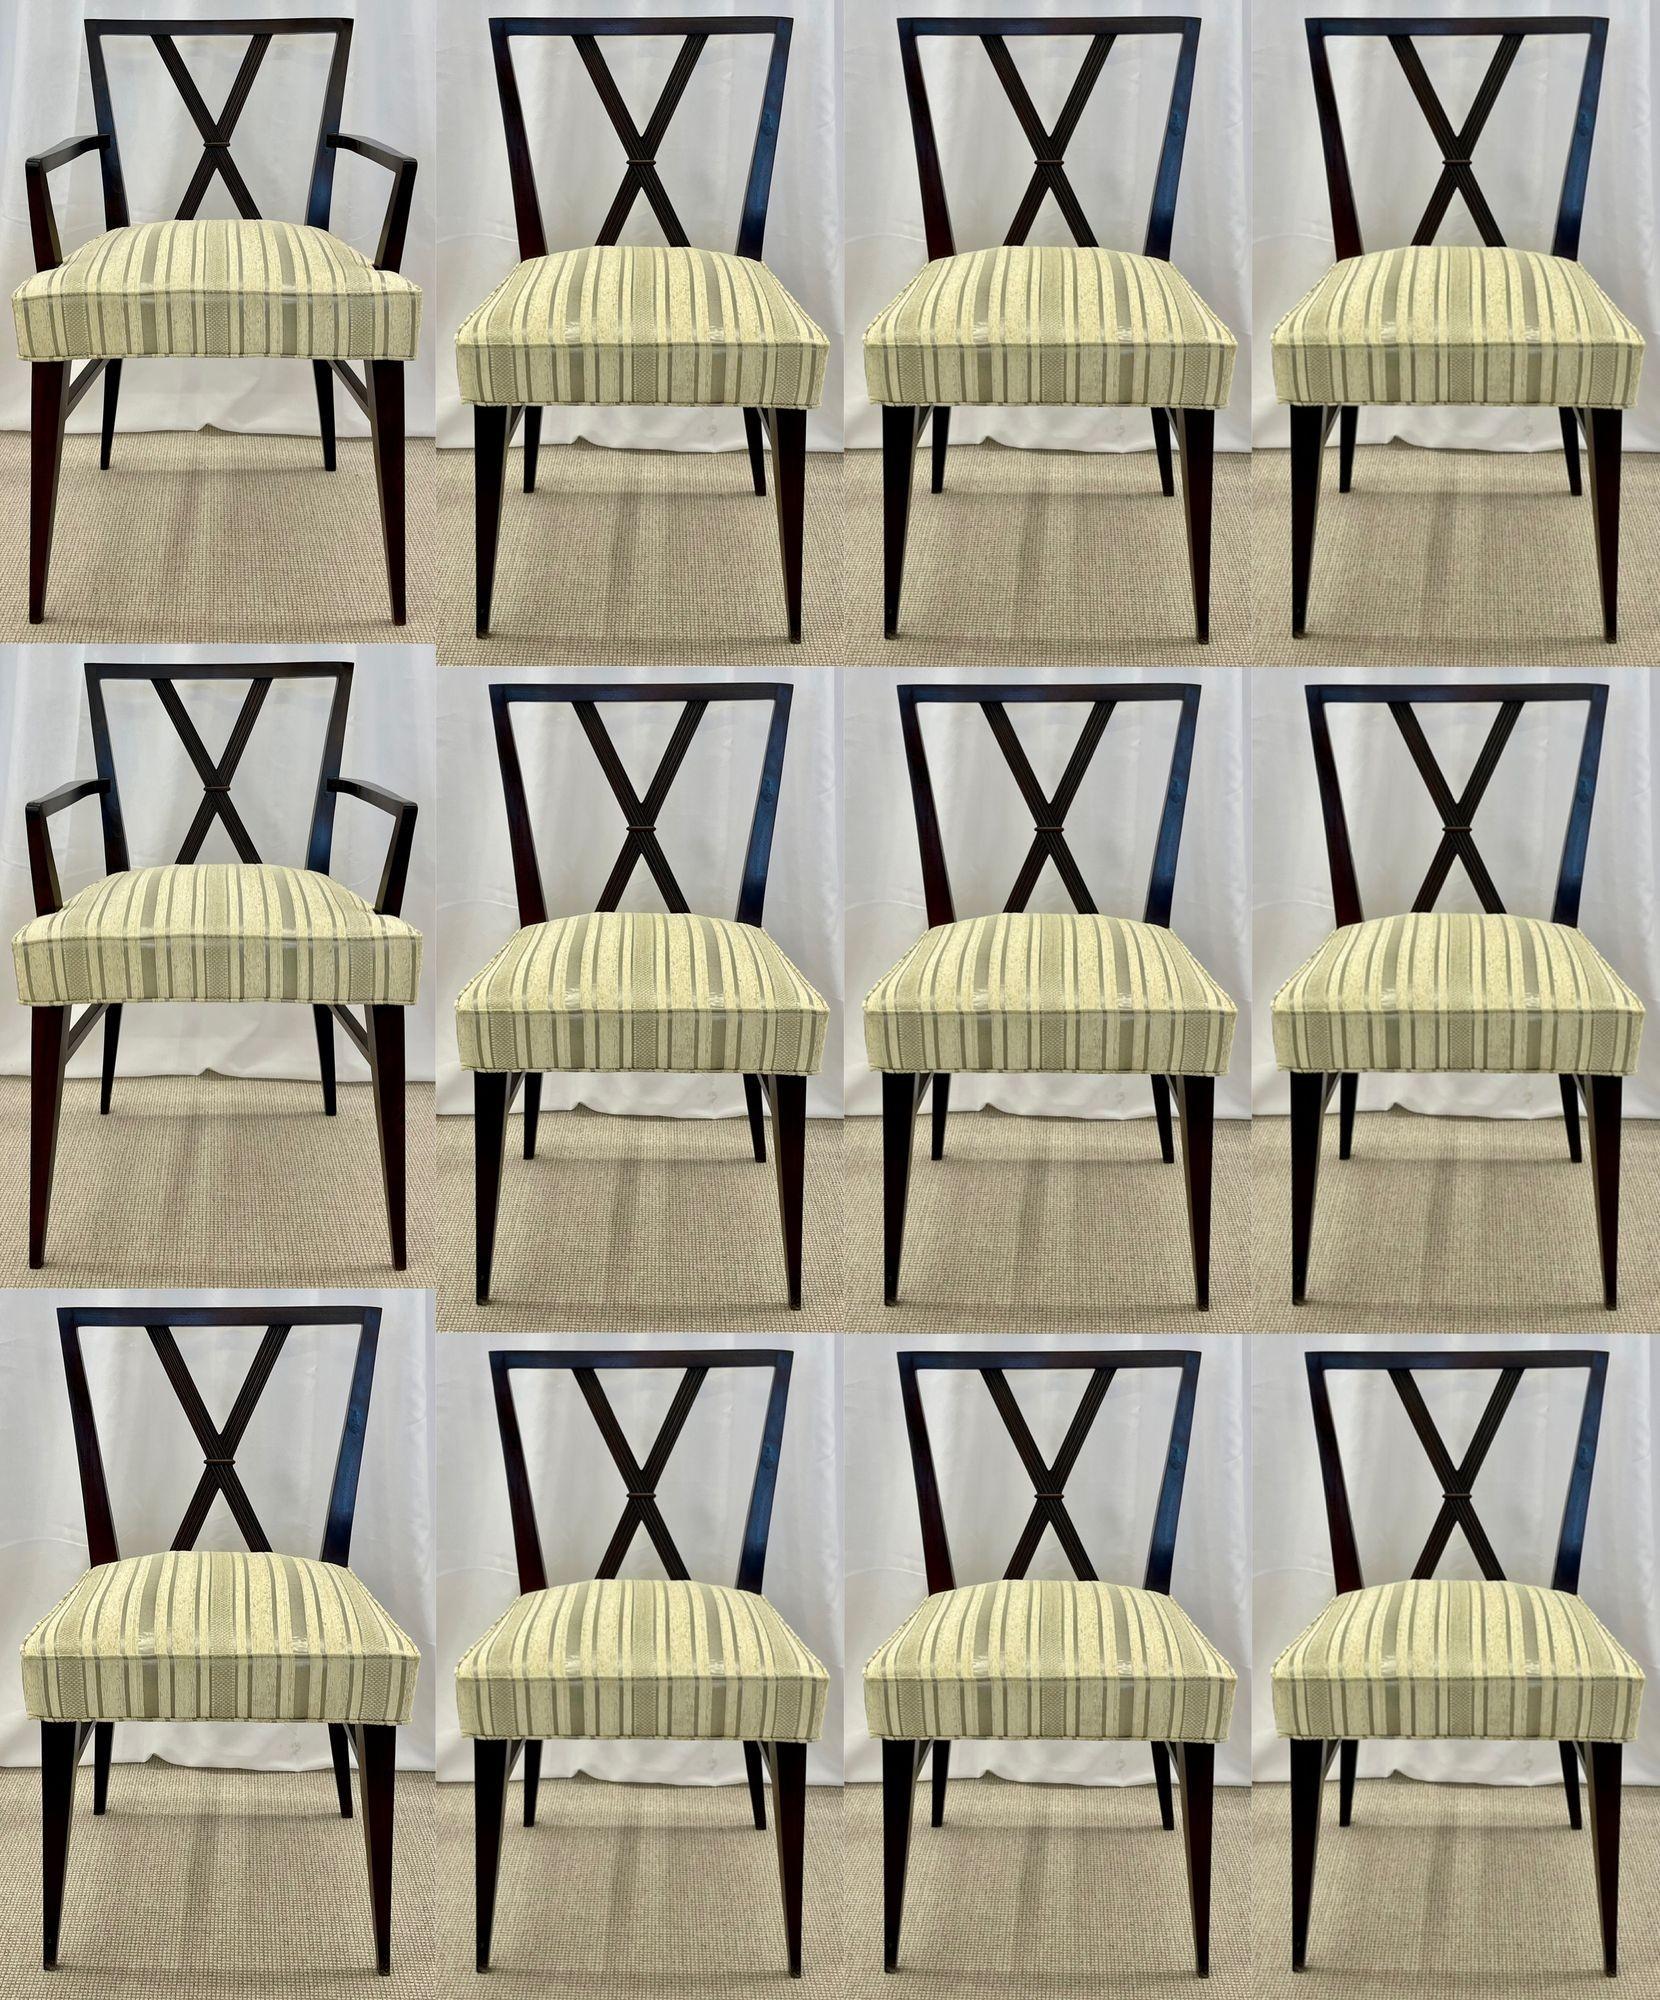 Attribution de Tommi Parzinger, moderne du milieu du siècle, douze chaises de salle à manger, années 1960

Ensemble de douze chaises de salle à manger. Le tout ayant été entièrement remis à neuf et recouvert d'une toute nouvelle sellerie rayée.